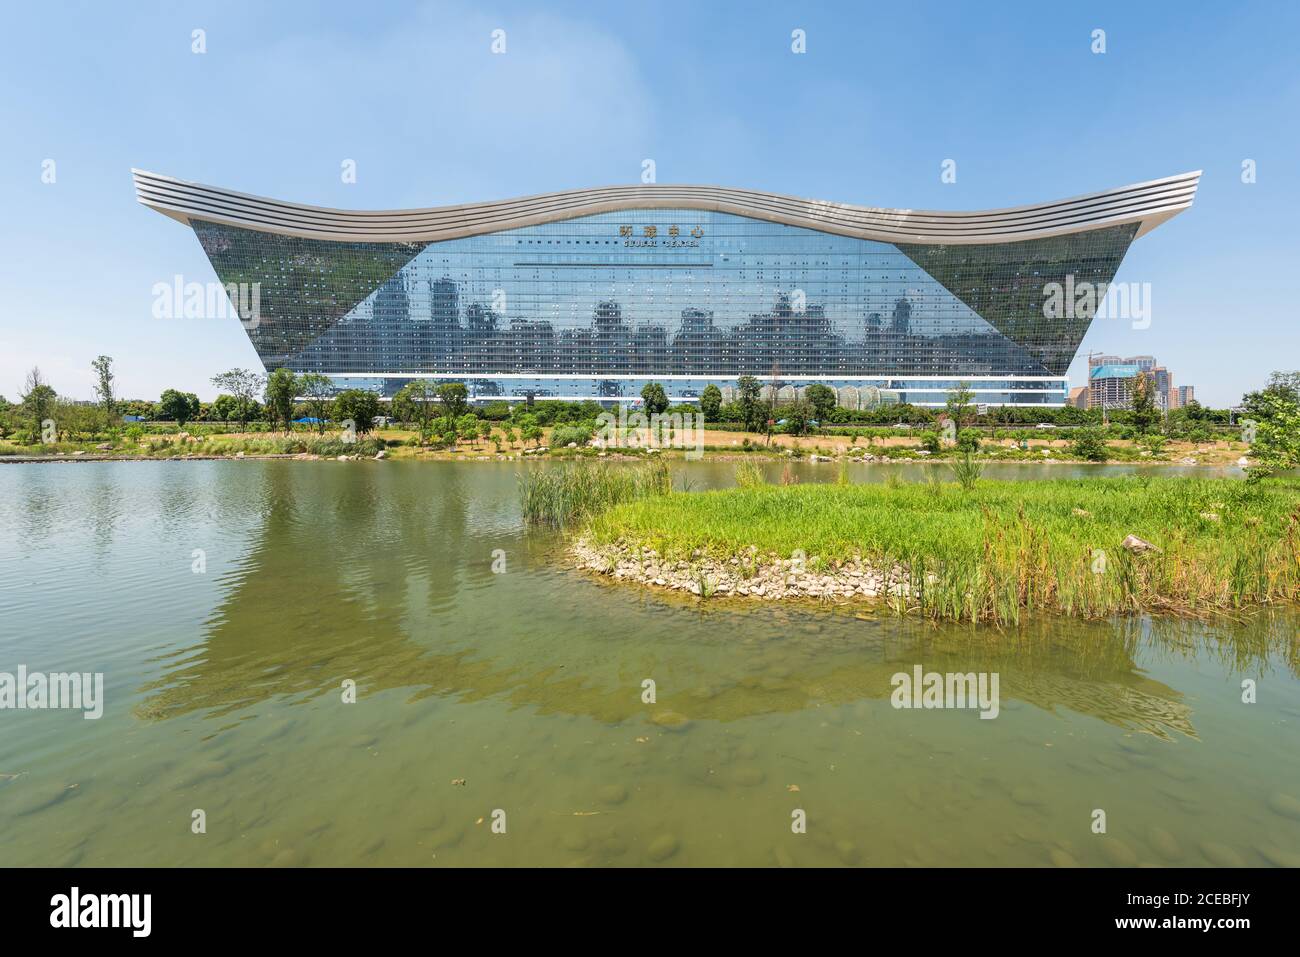 Chengdu, province du Sichuan, Chine - 26 août 2020 : bâtiment du Centre mondial du Nouveau siècle qui se reflète dans un lac par une journée ensoleillée avec un ciel bleu clair Banque D'Images